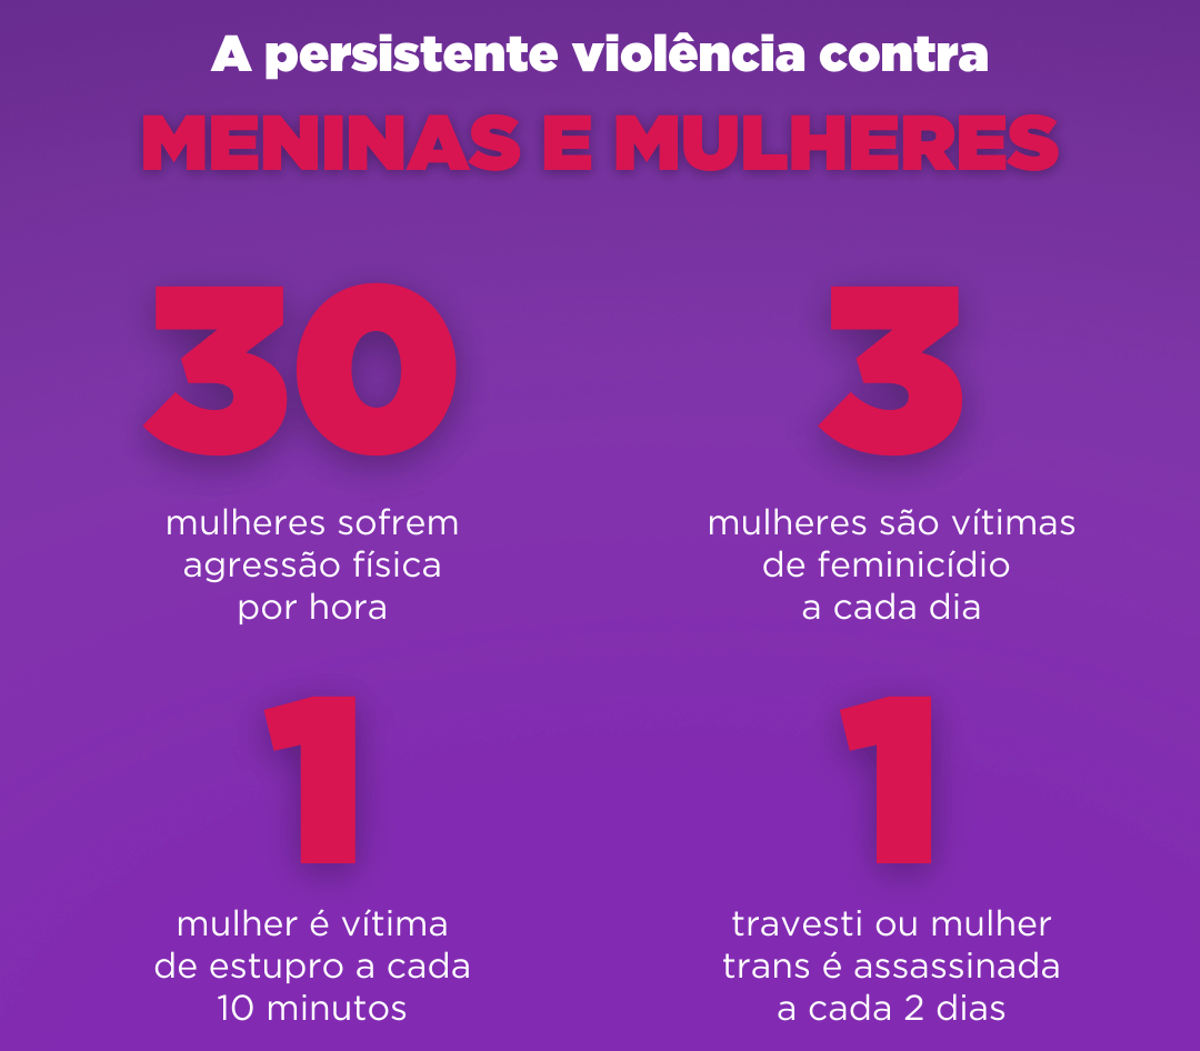 A vida das mulheres piorou muito no Governo Bolsonaro